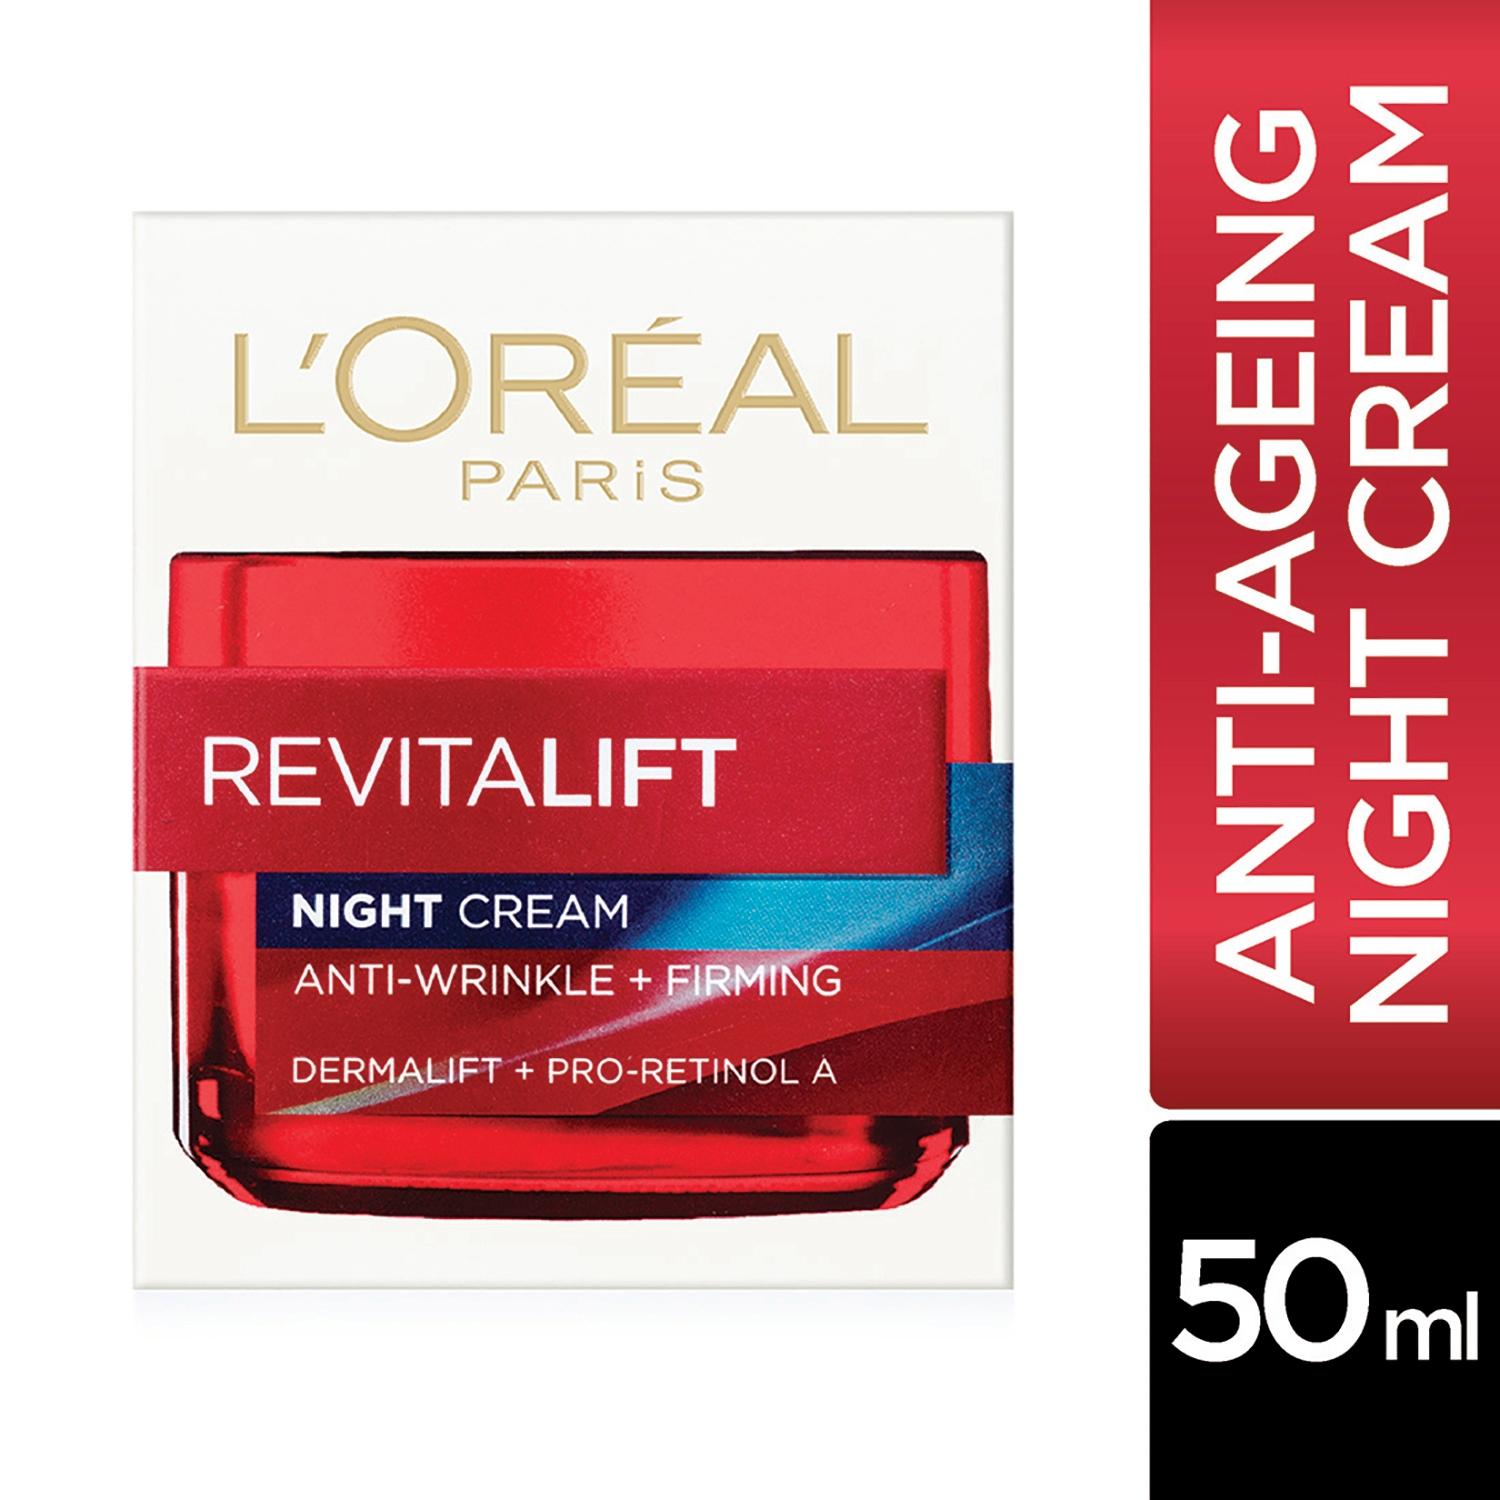 l'oreal-paris-revitalift-moisturizing-night-cream-(50ml)